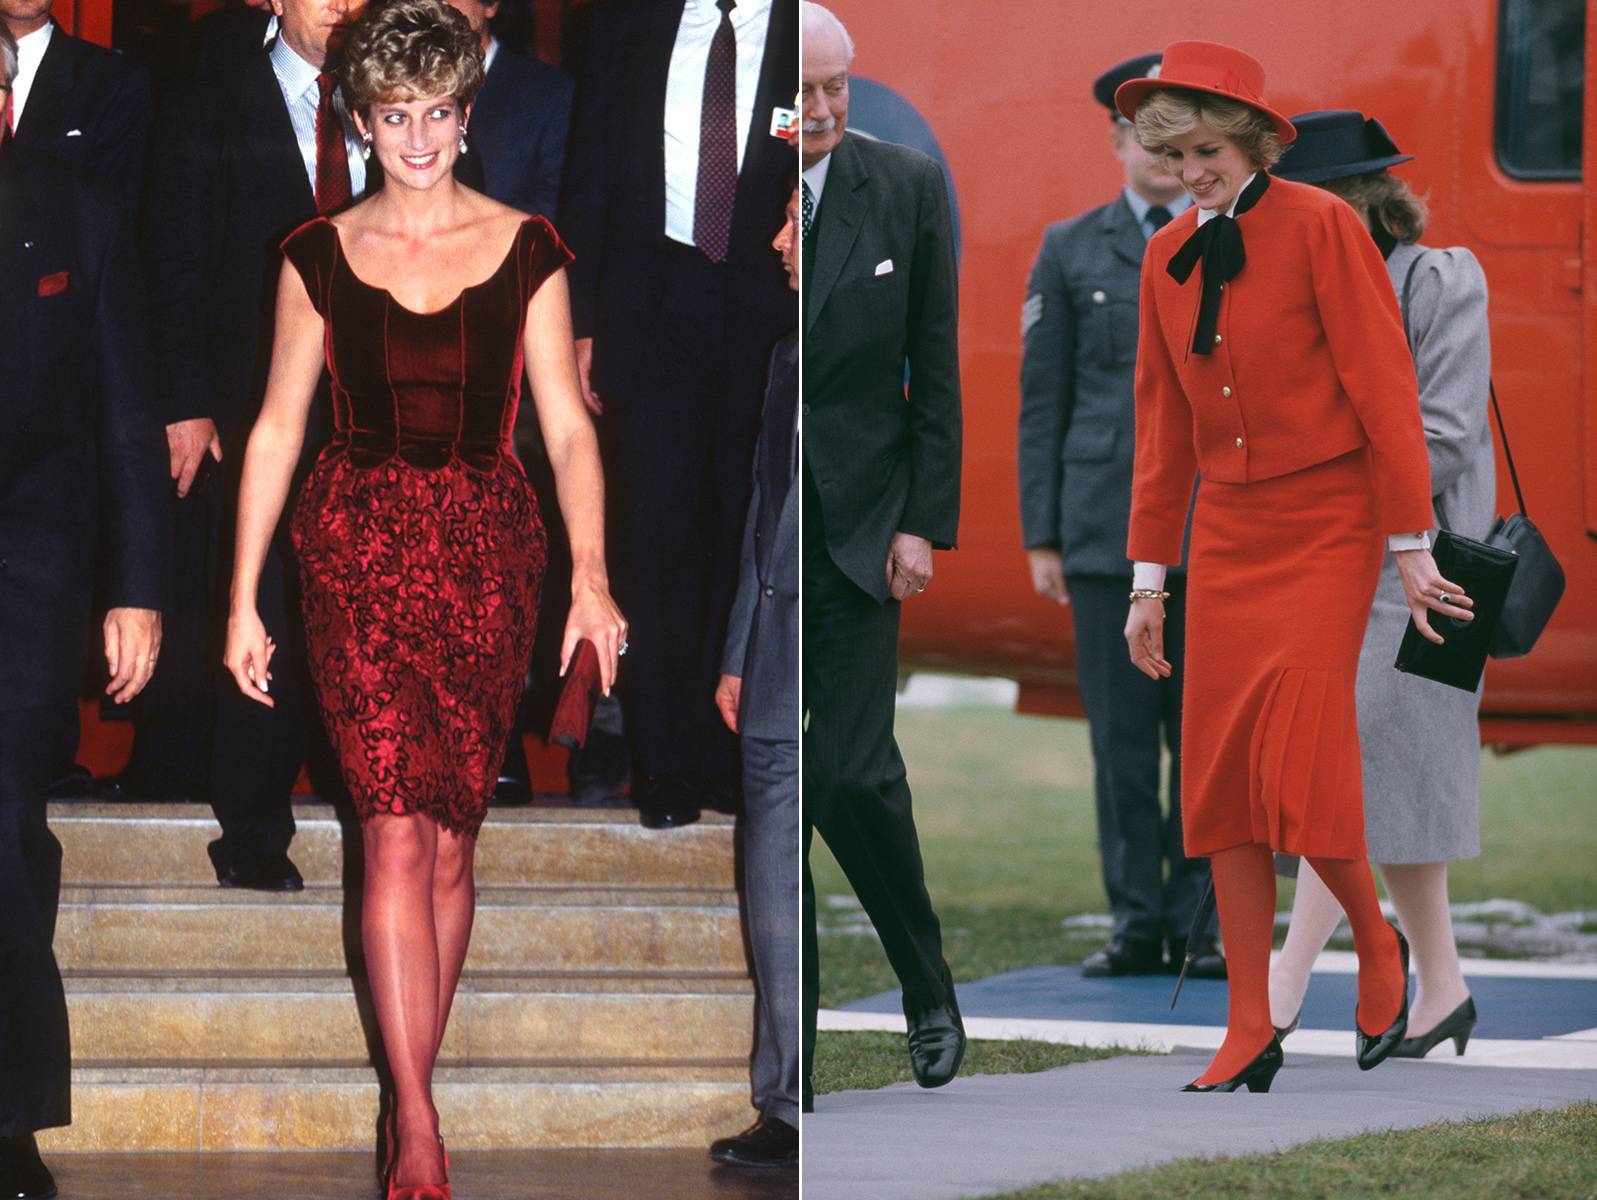 Od lewej: W latach 90. stroje Lady Di stały się bardziej oryginalne, ale czerwone rajstopy nie zniknęły. W 1992 r. przywdziała czerwoną minisukienkę uzupełnioną o dopasowane dodatki. W 1985 r. Diana dowiodła, że połączenie czerwieni i czerni sprawdza się znakomicie. Jeśli więc nie chcesz iść na całość, możesz połączyć czerwone rajstopy z czarną torebką lub butami. (Fot. Getty Images)